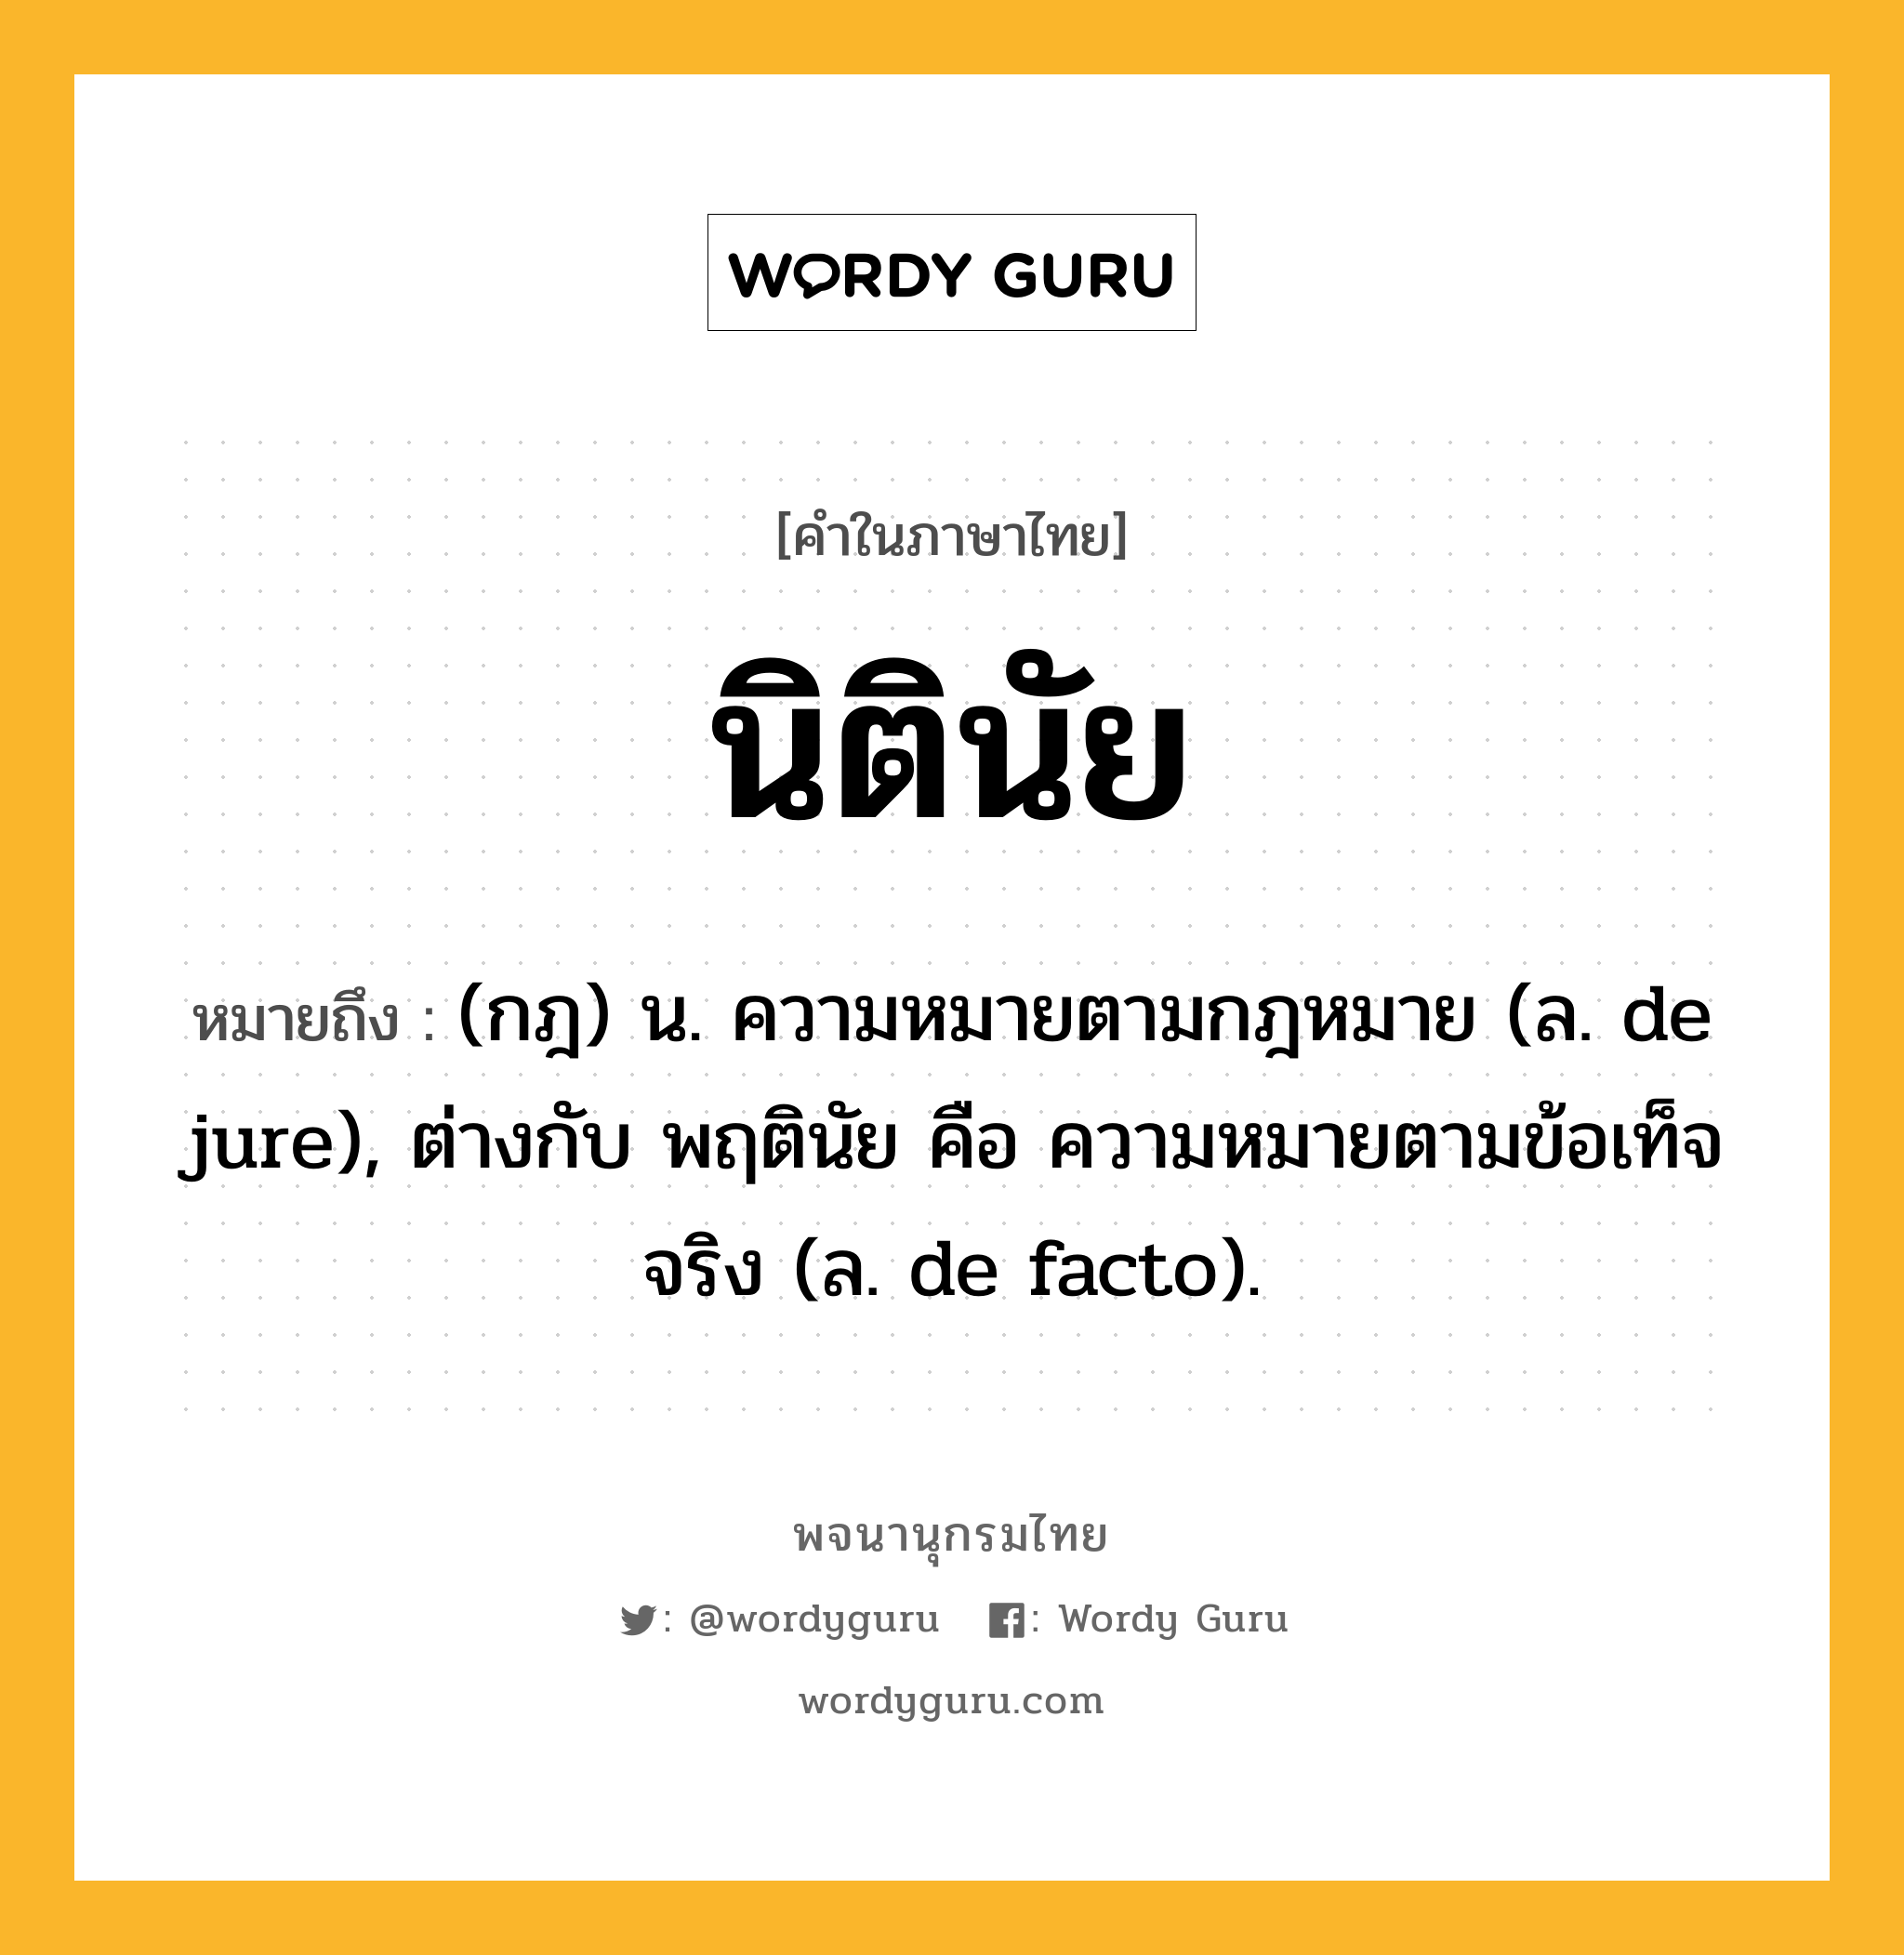 นิตินัย หมายถึงอะไร?, คำในภาษาไทย นิตินัย หมายถึง (กฎ) น. ความหมายตามกฎหมาย (ล. de jure), ต่างกับ พฤตินัย คือ ความหมายตามข้อเท็จจริง (ล. de facto).